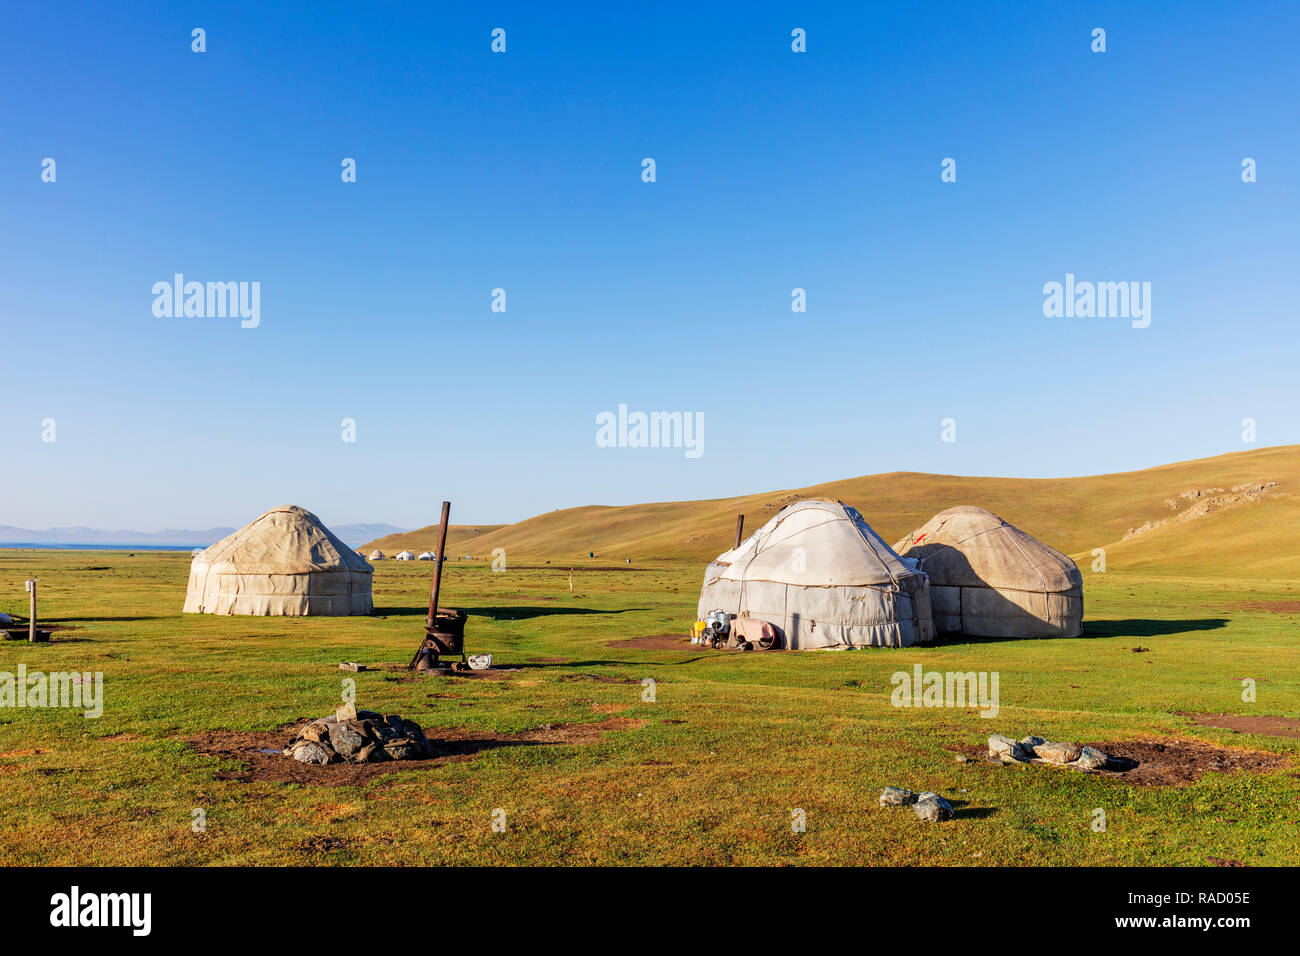 Yurt at Songkol Lake, Kyrgyzstan, Central Asia, Asia Stock Photo